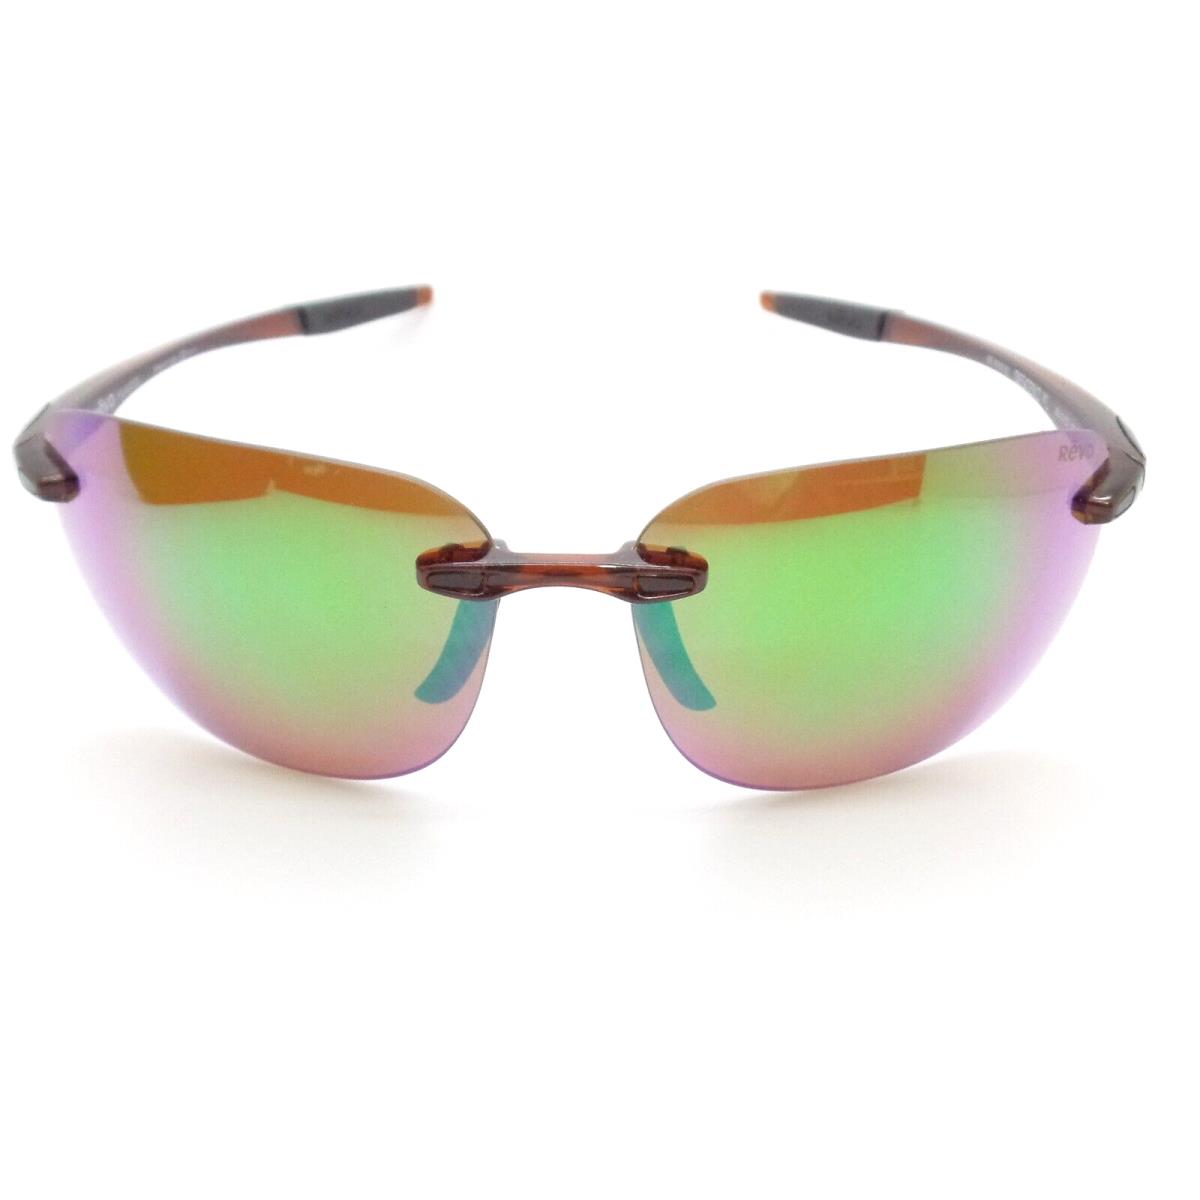 Revo sunglasses  - Brown Frame, Terra Lens 1